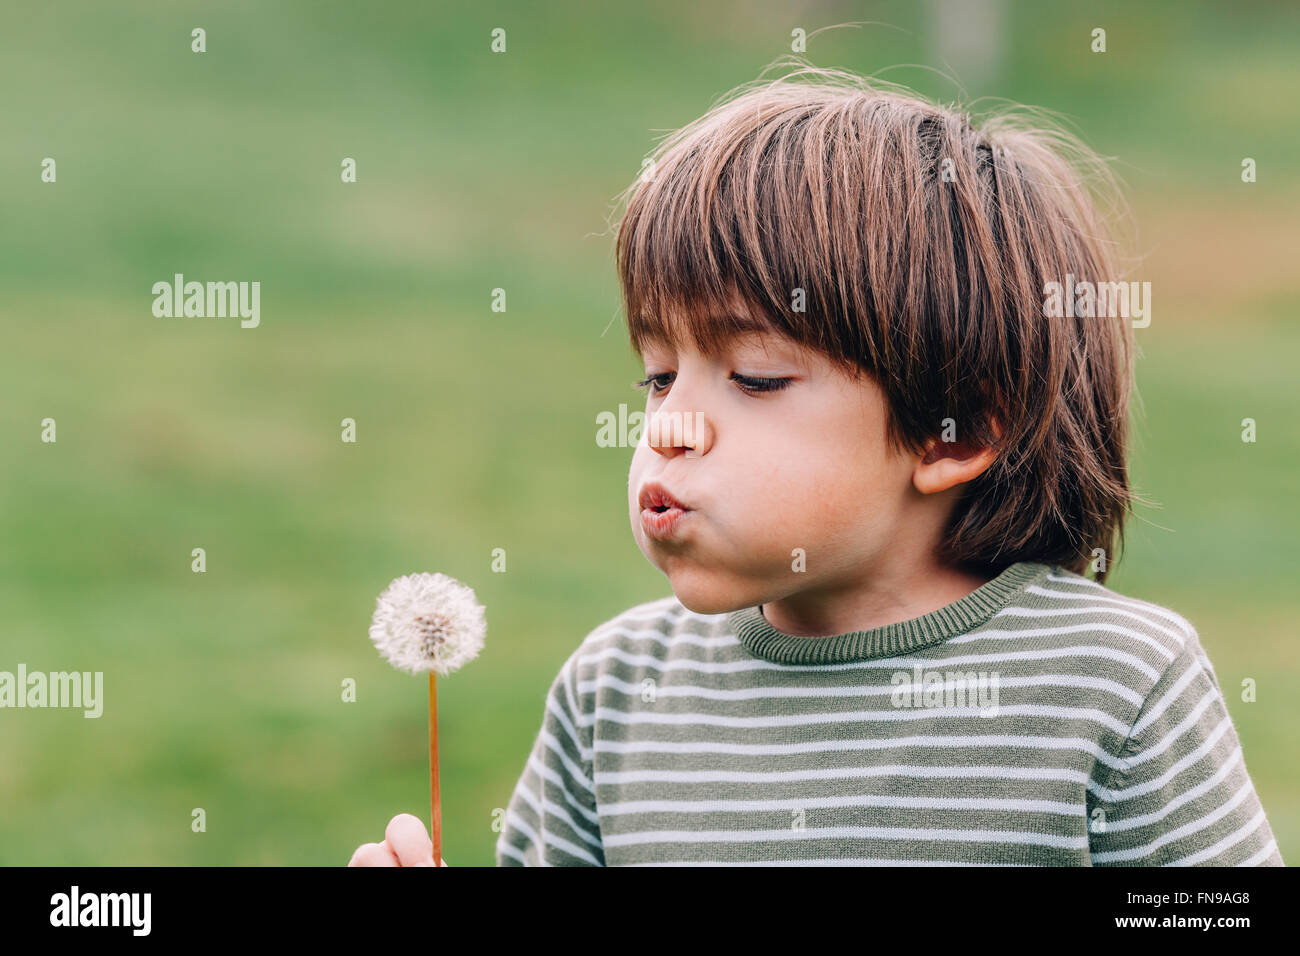 Boy blowing dandelion Banque D'Images